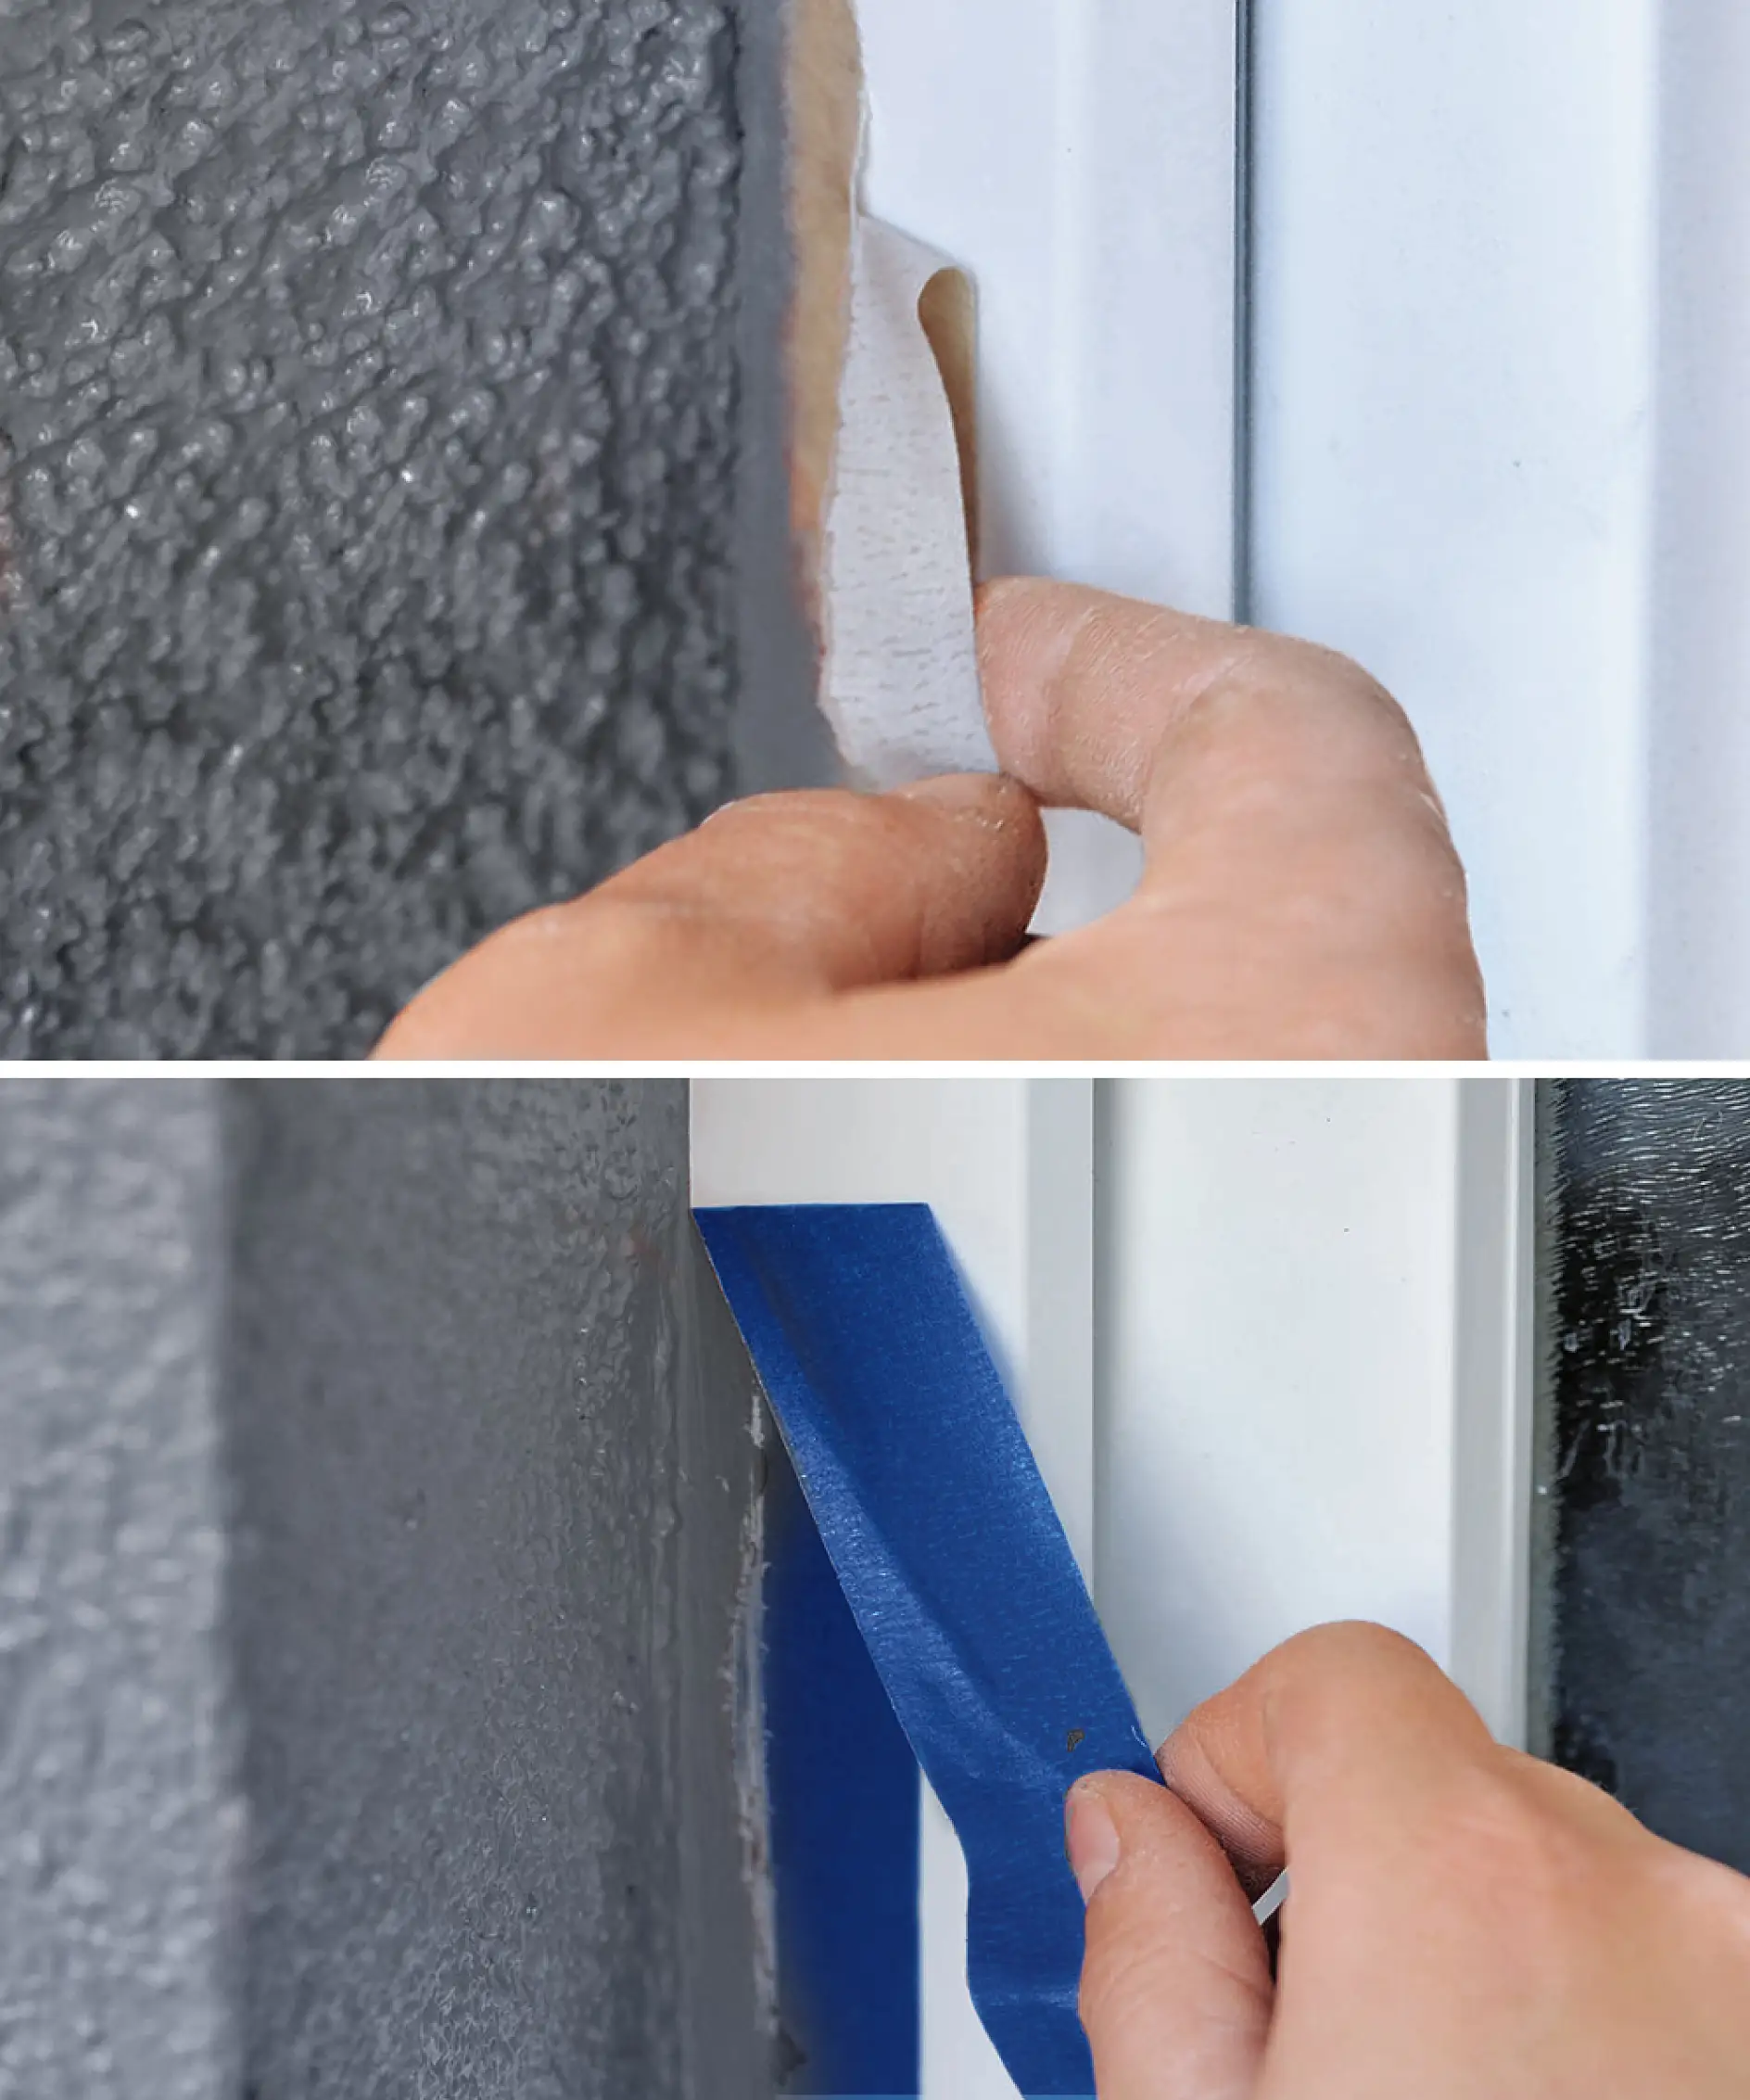 Maskovanie PVC okien môže byť problematické, ak použijete nesprávnu pásku.